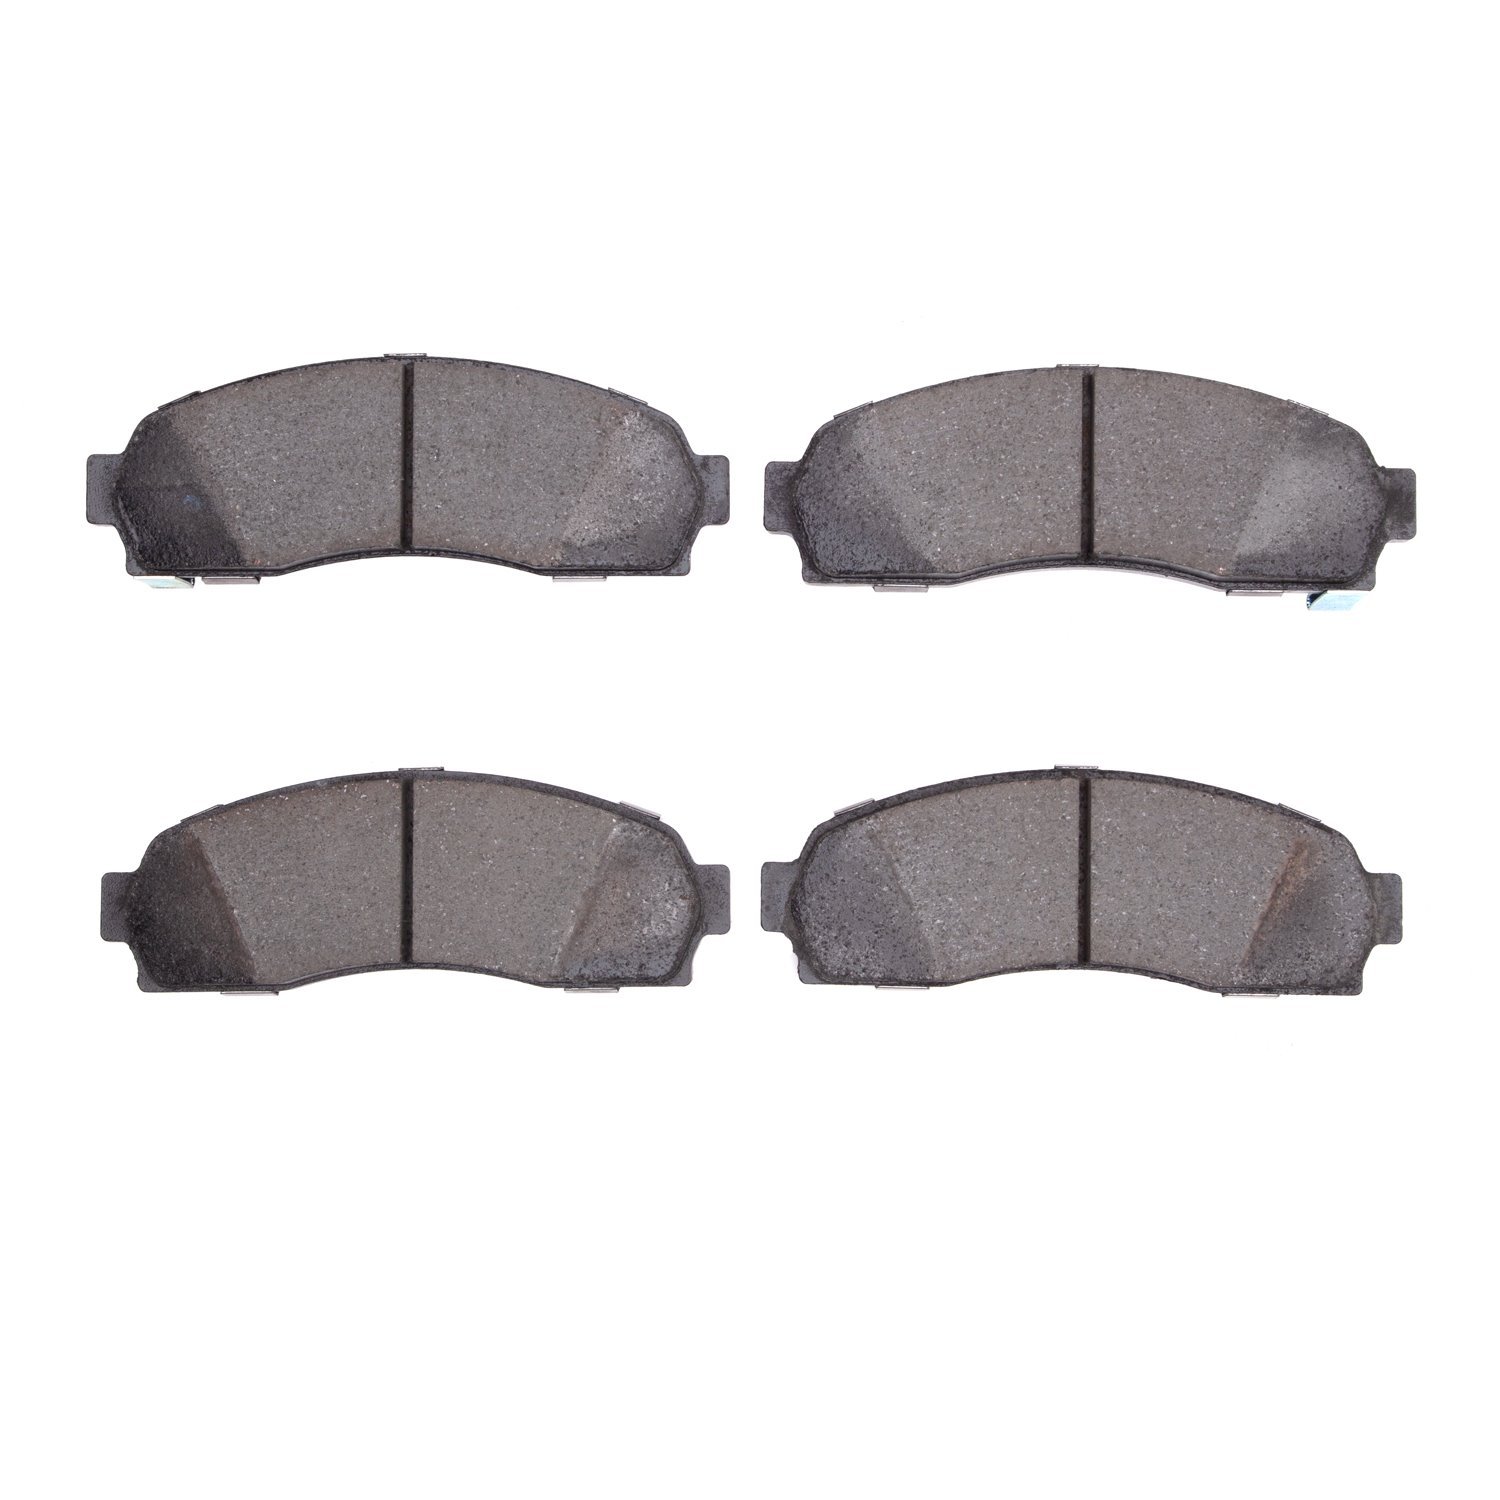 Ceramic Brake Pads, 2001-2012 Fits Multiple Makes/Models, Position: Front